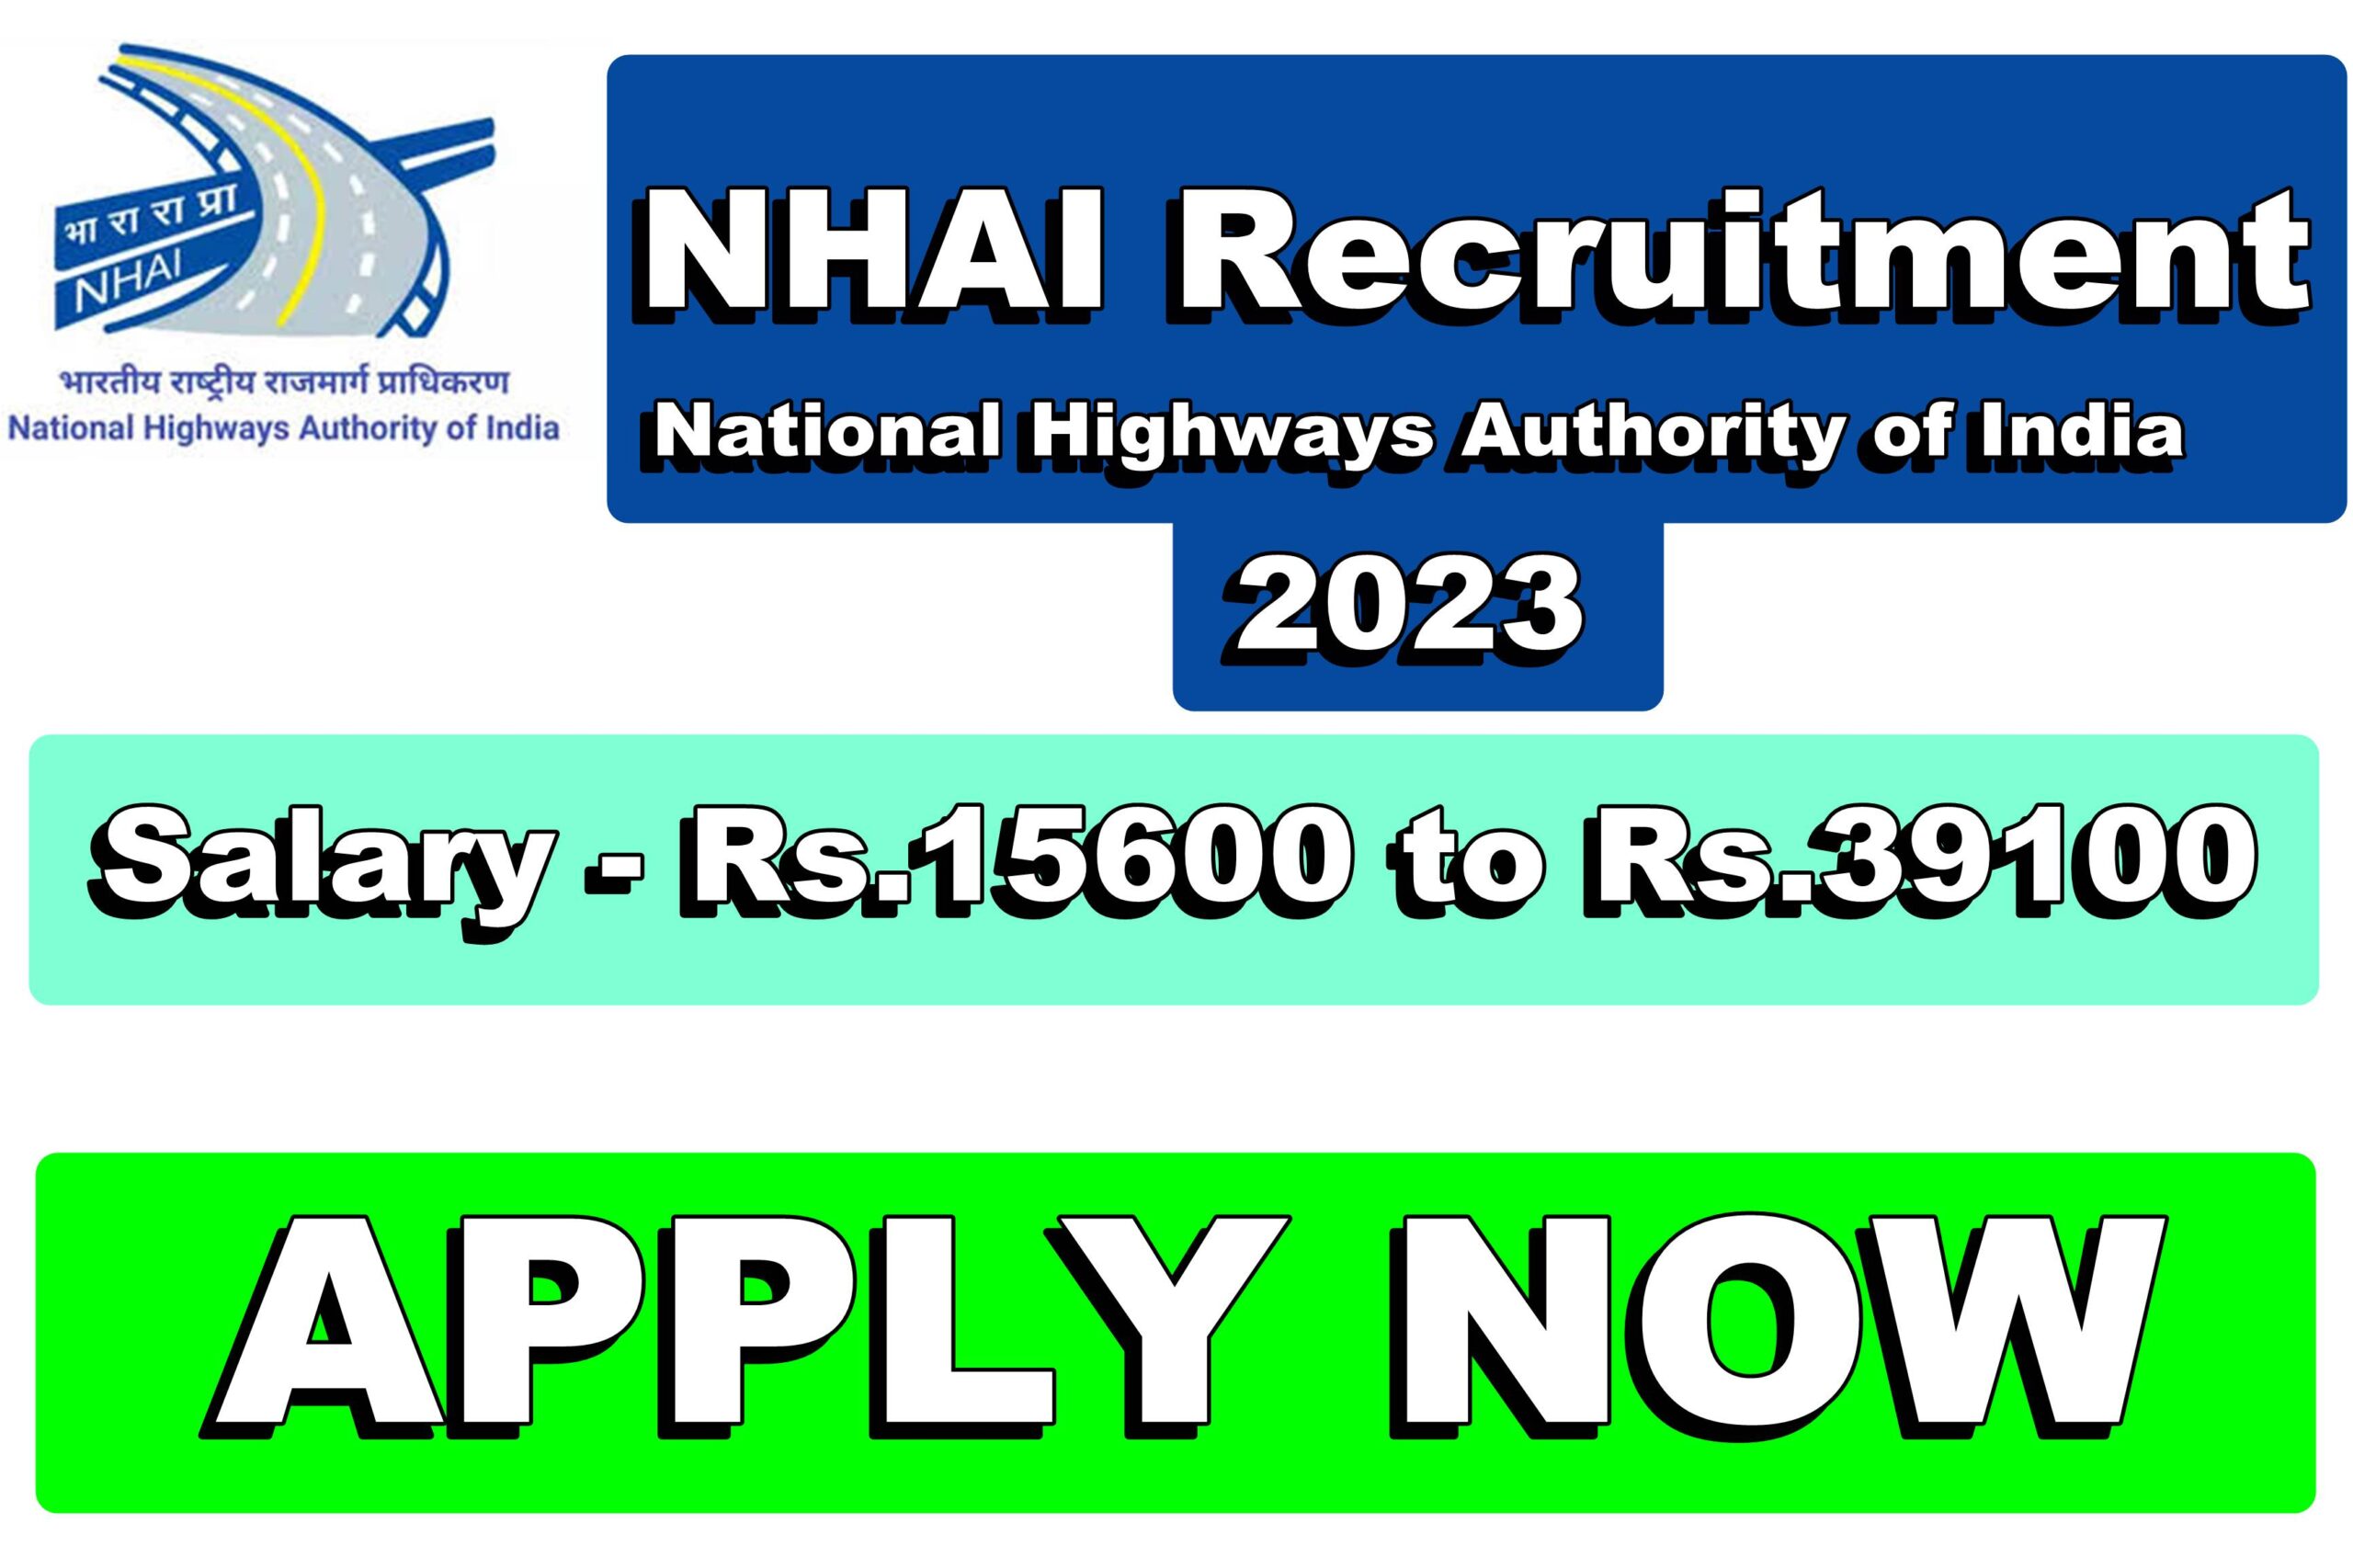 NHAI Recruitment 2023